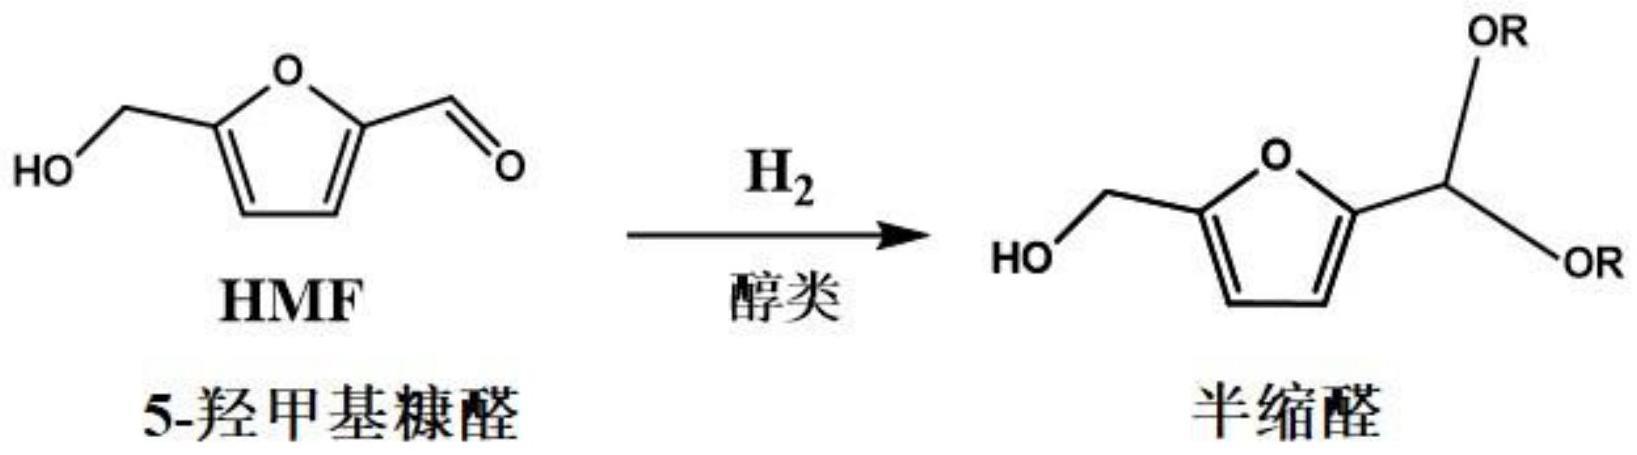 一种双金属负载型催化剂的制备方法及呋喃醛与醇制备半缩醛的方法